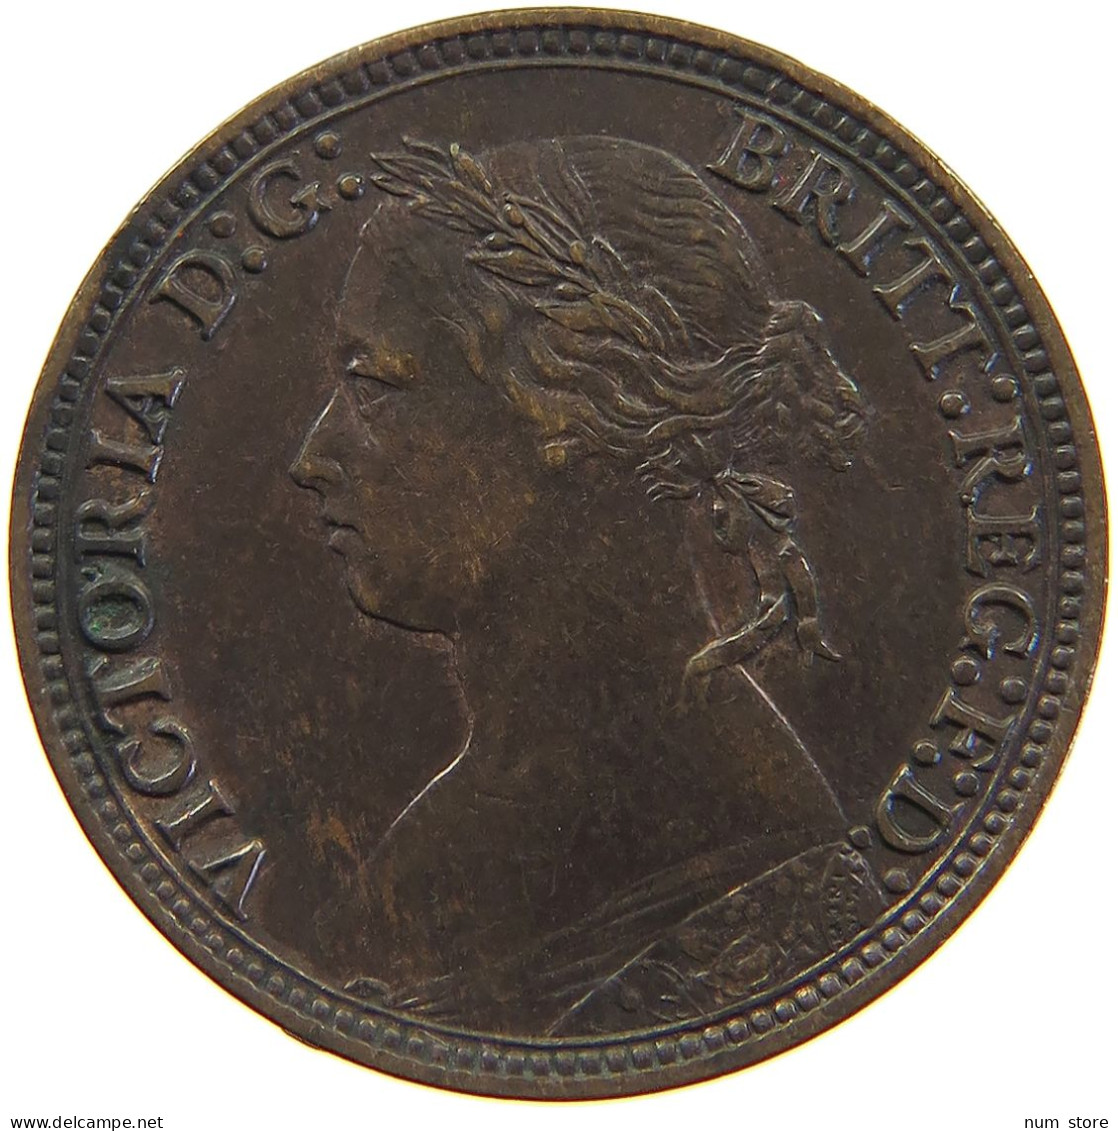 GREAT BRITAIN FARTHING 1879 Victoria 1837-1901 #c063 0119 - B. 1 Farthing